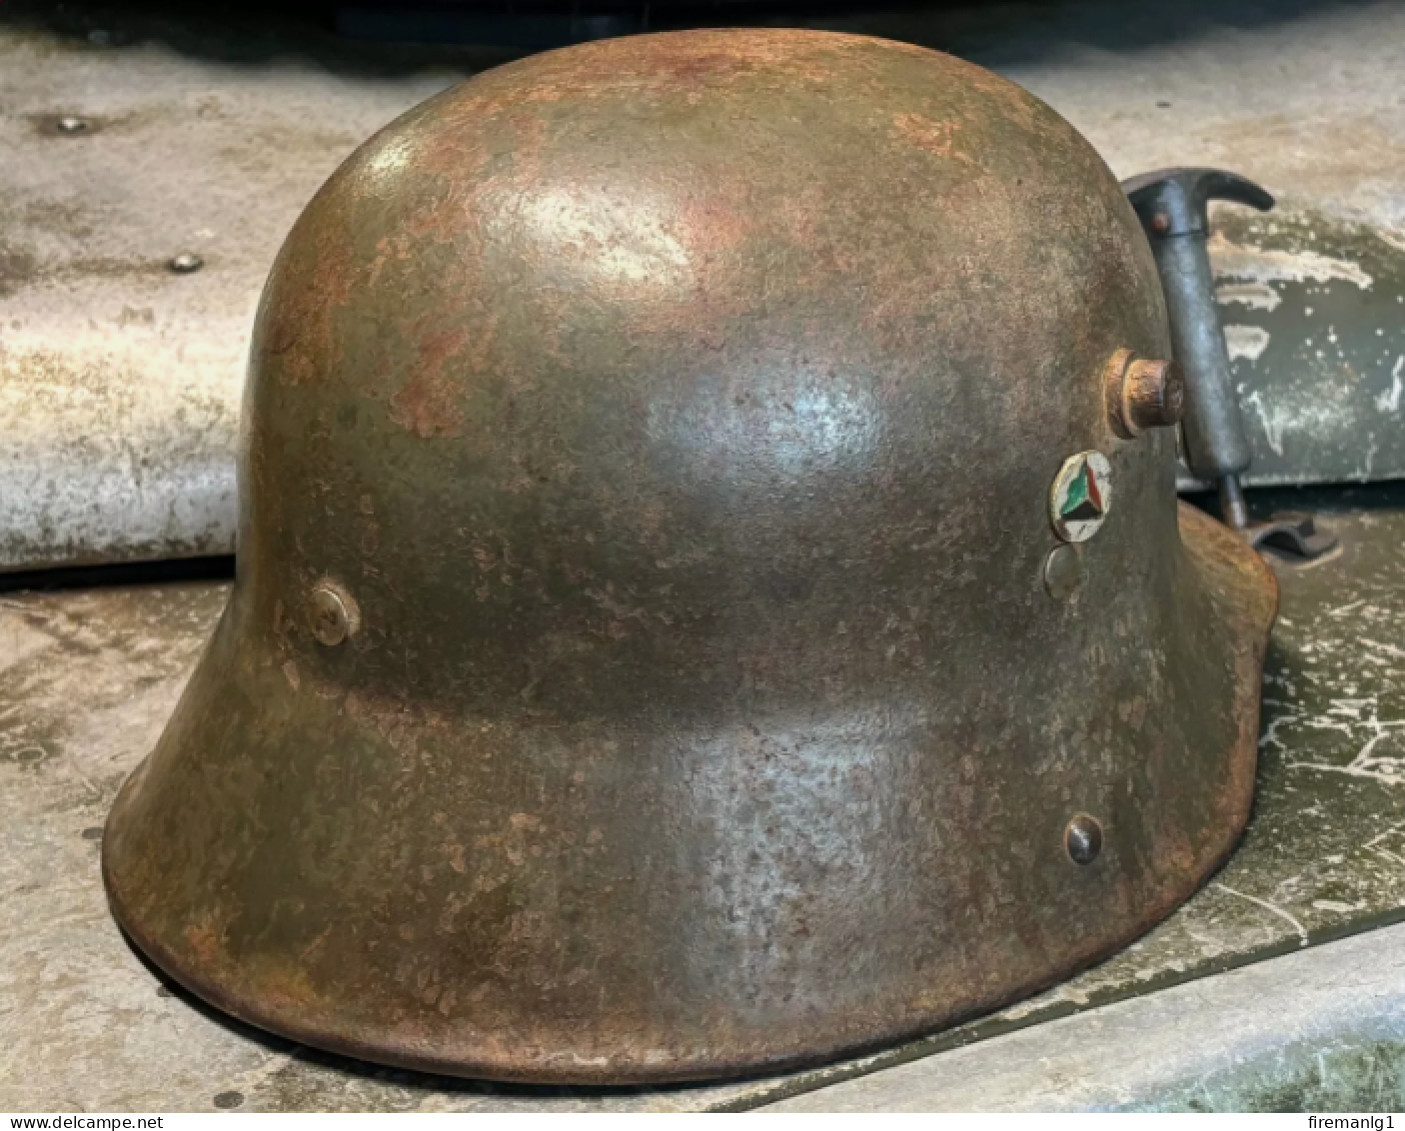 WW1 German M,16 Steel Helmet - (Mod.1916 Stahlhelm) - Afghan Used - Size ET 64 - Headpieces, Headdresses